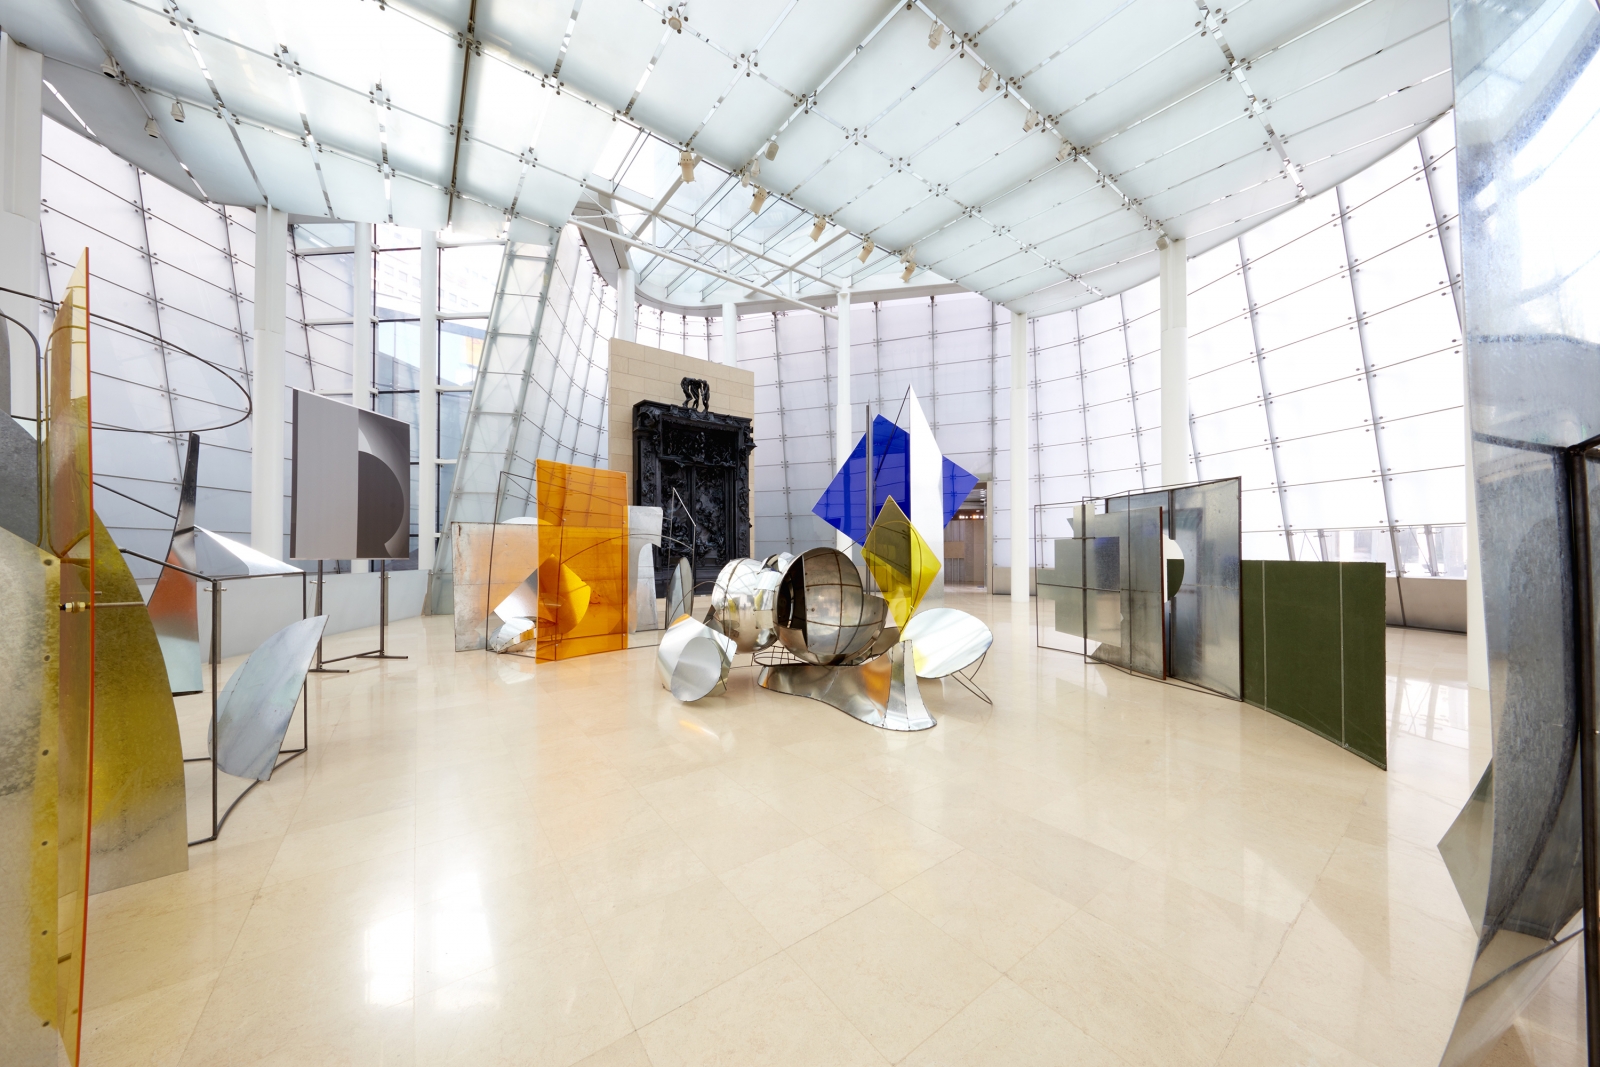 劉韡,&nbsp;Panorama 裝置視圖,&nbsp;韓國首爾PLATEAU三星藝術博物館 二零一六年四月二十八日至八月十四日